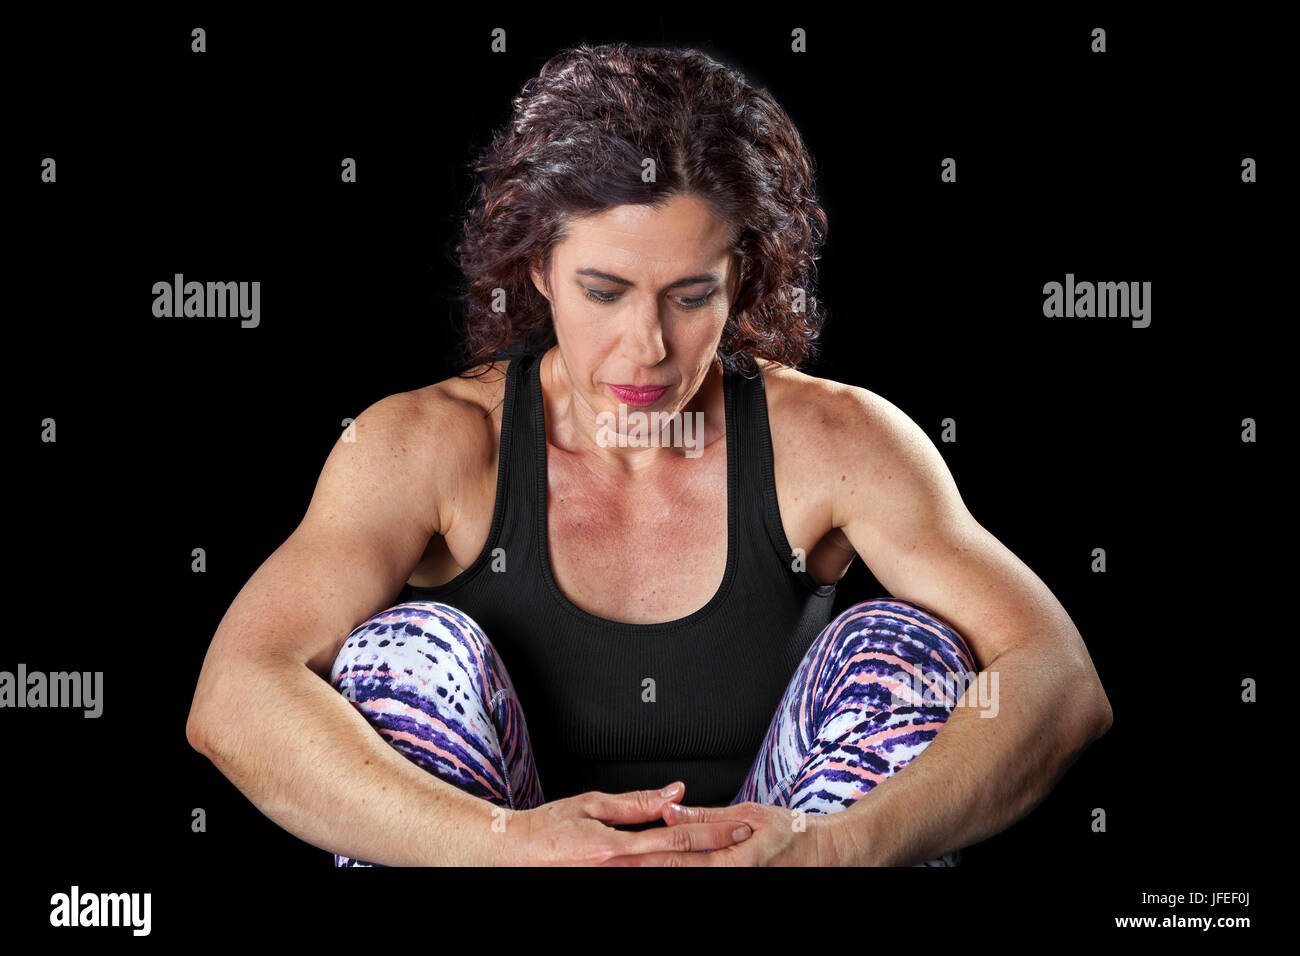 Donna muscolare su sfondo nero si siede con le braccia intorno a lei le ginocchia. Ha un aspetto contemplativo e forse un po' triste o nel profondo del pensiero. Foto Stock